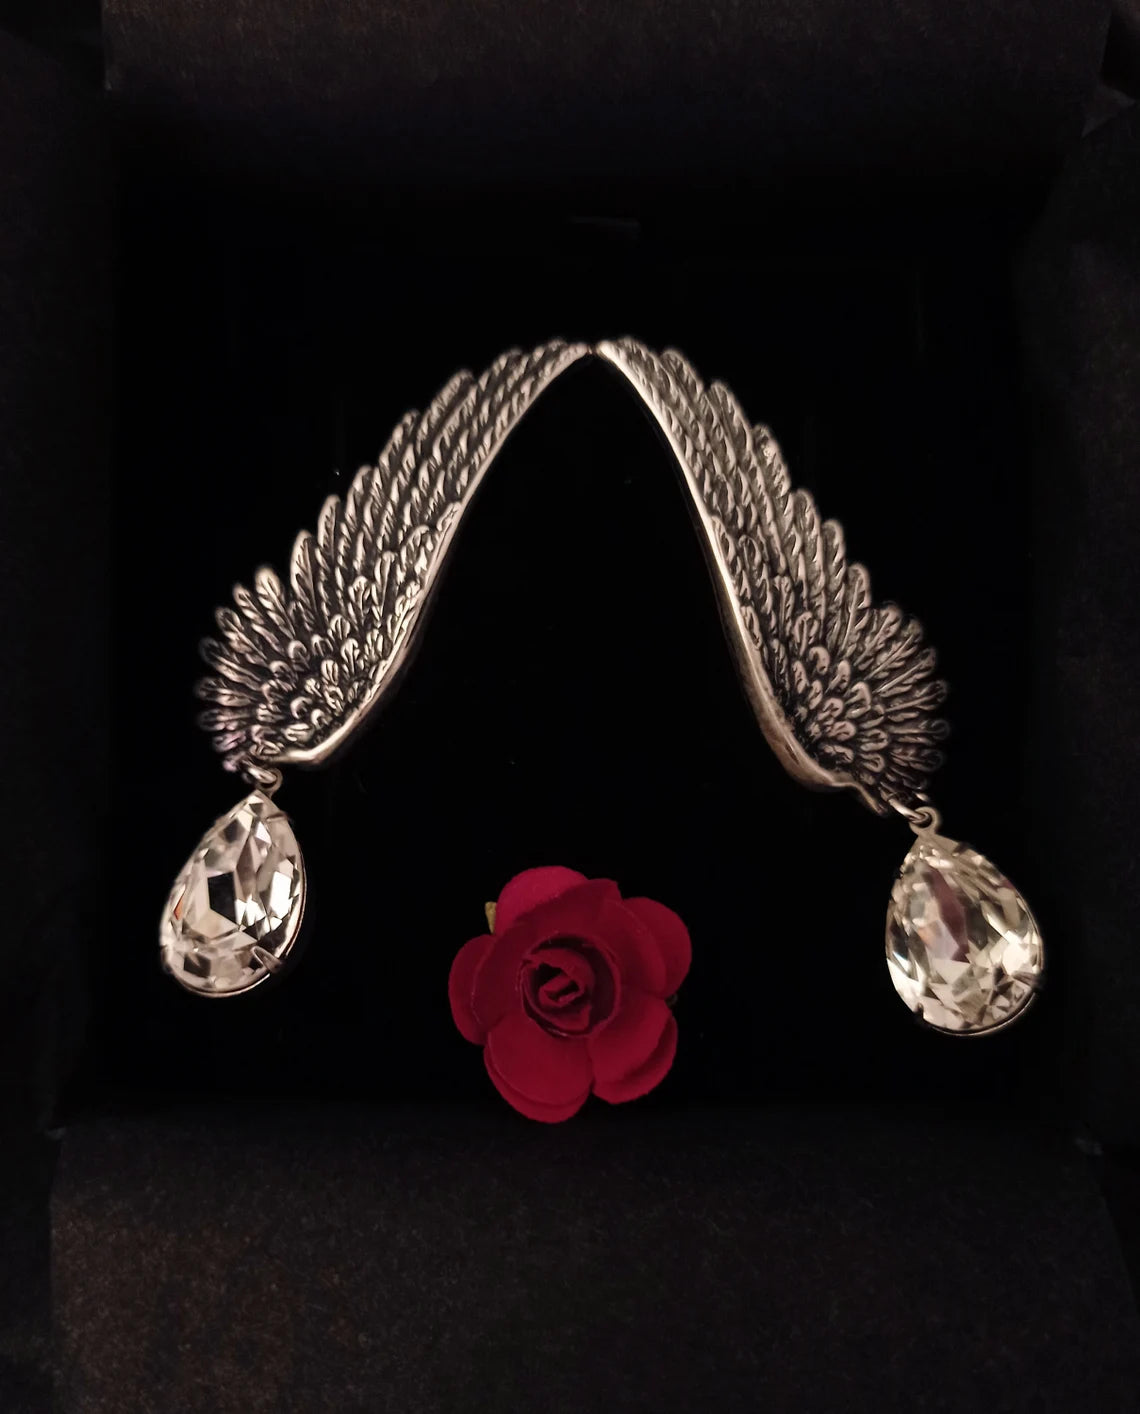 Silver Wings Earrings with Swarovski Drops